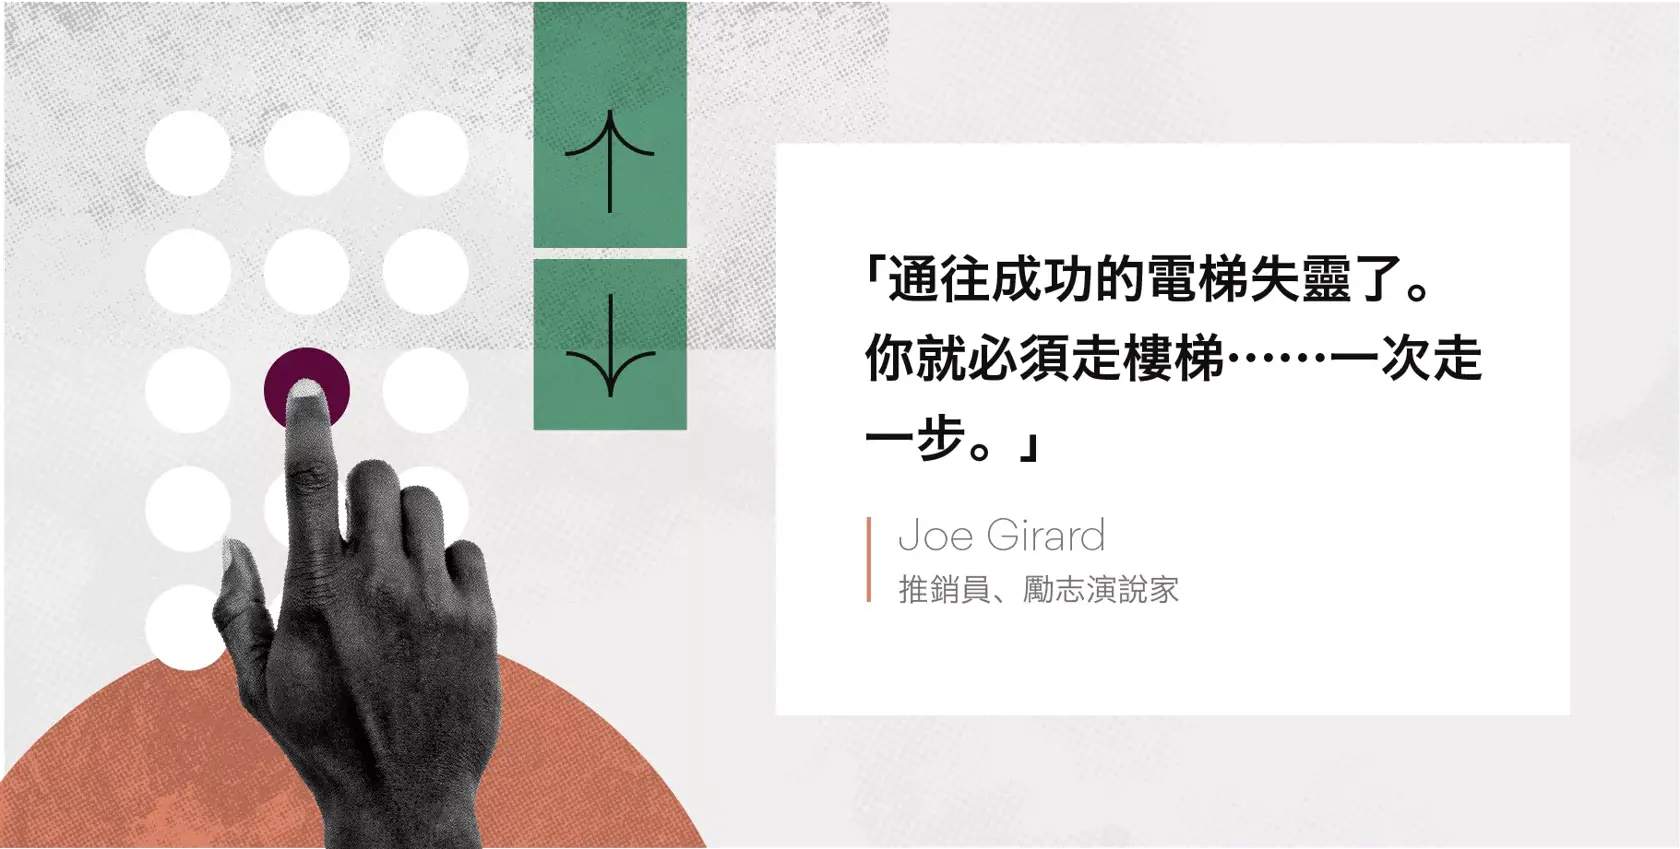 Joe Girard 團隊勵志語錄圖片